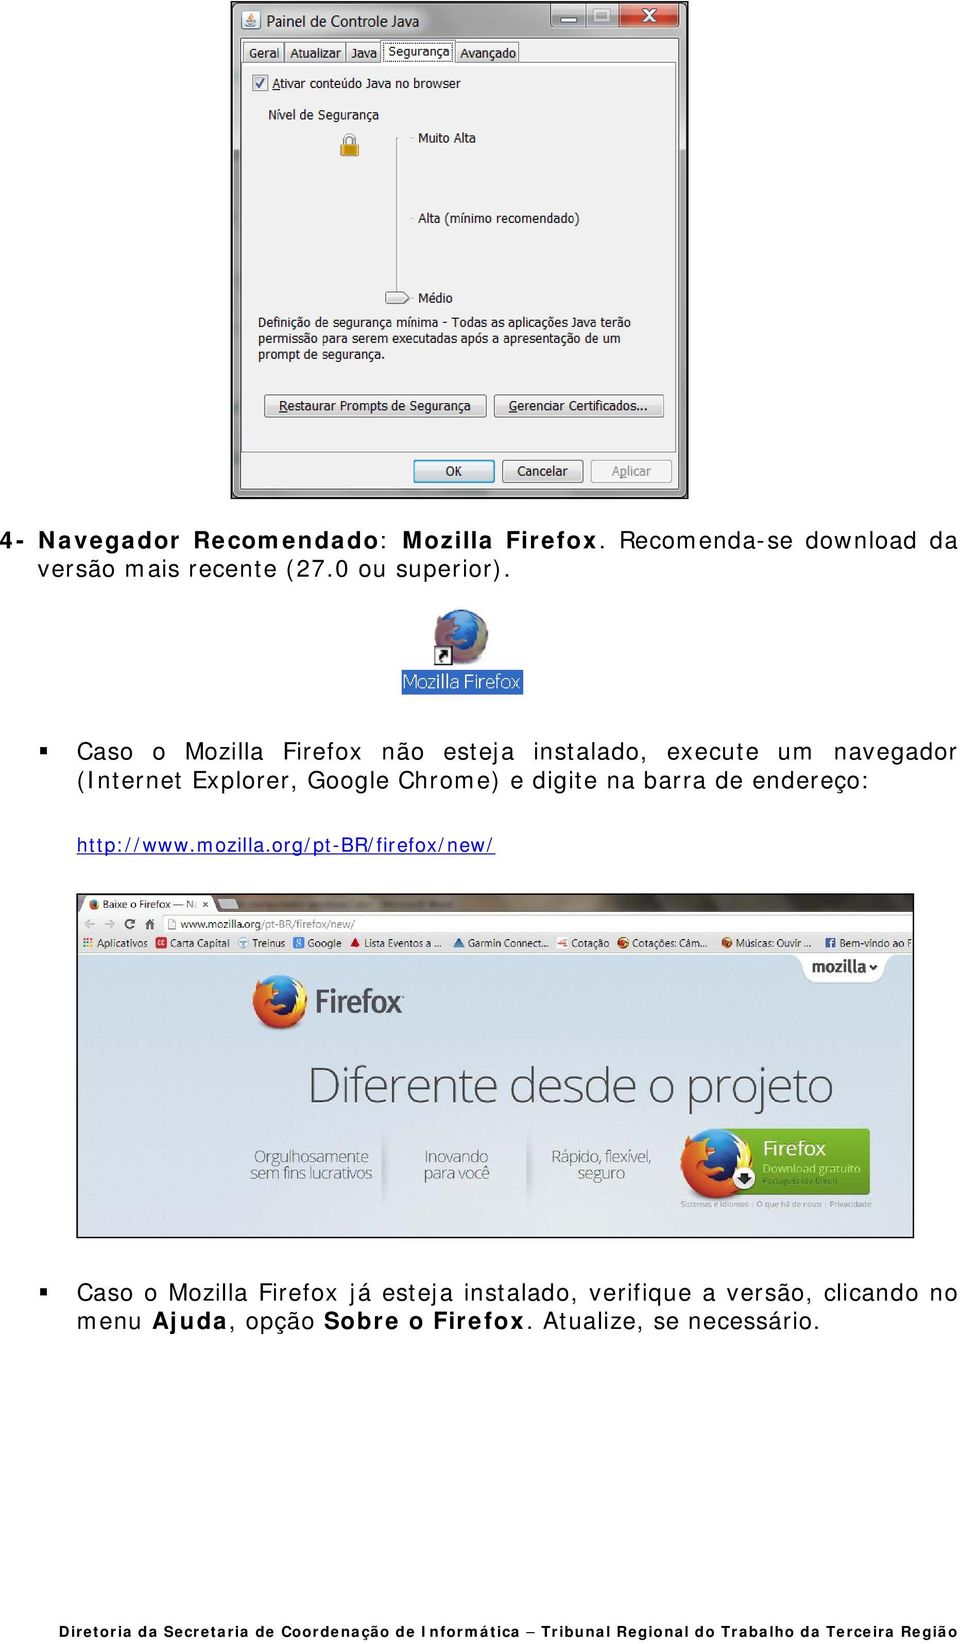 Caso o Mozilla Firefox não esteja instalado, execute um navegador (Internet Explorer, Google Chrome) e